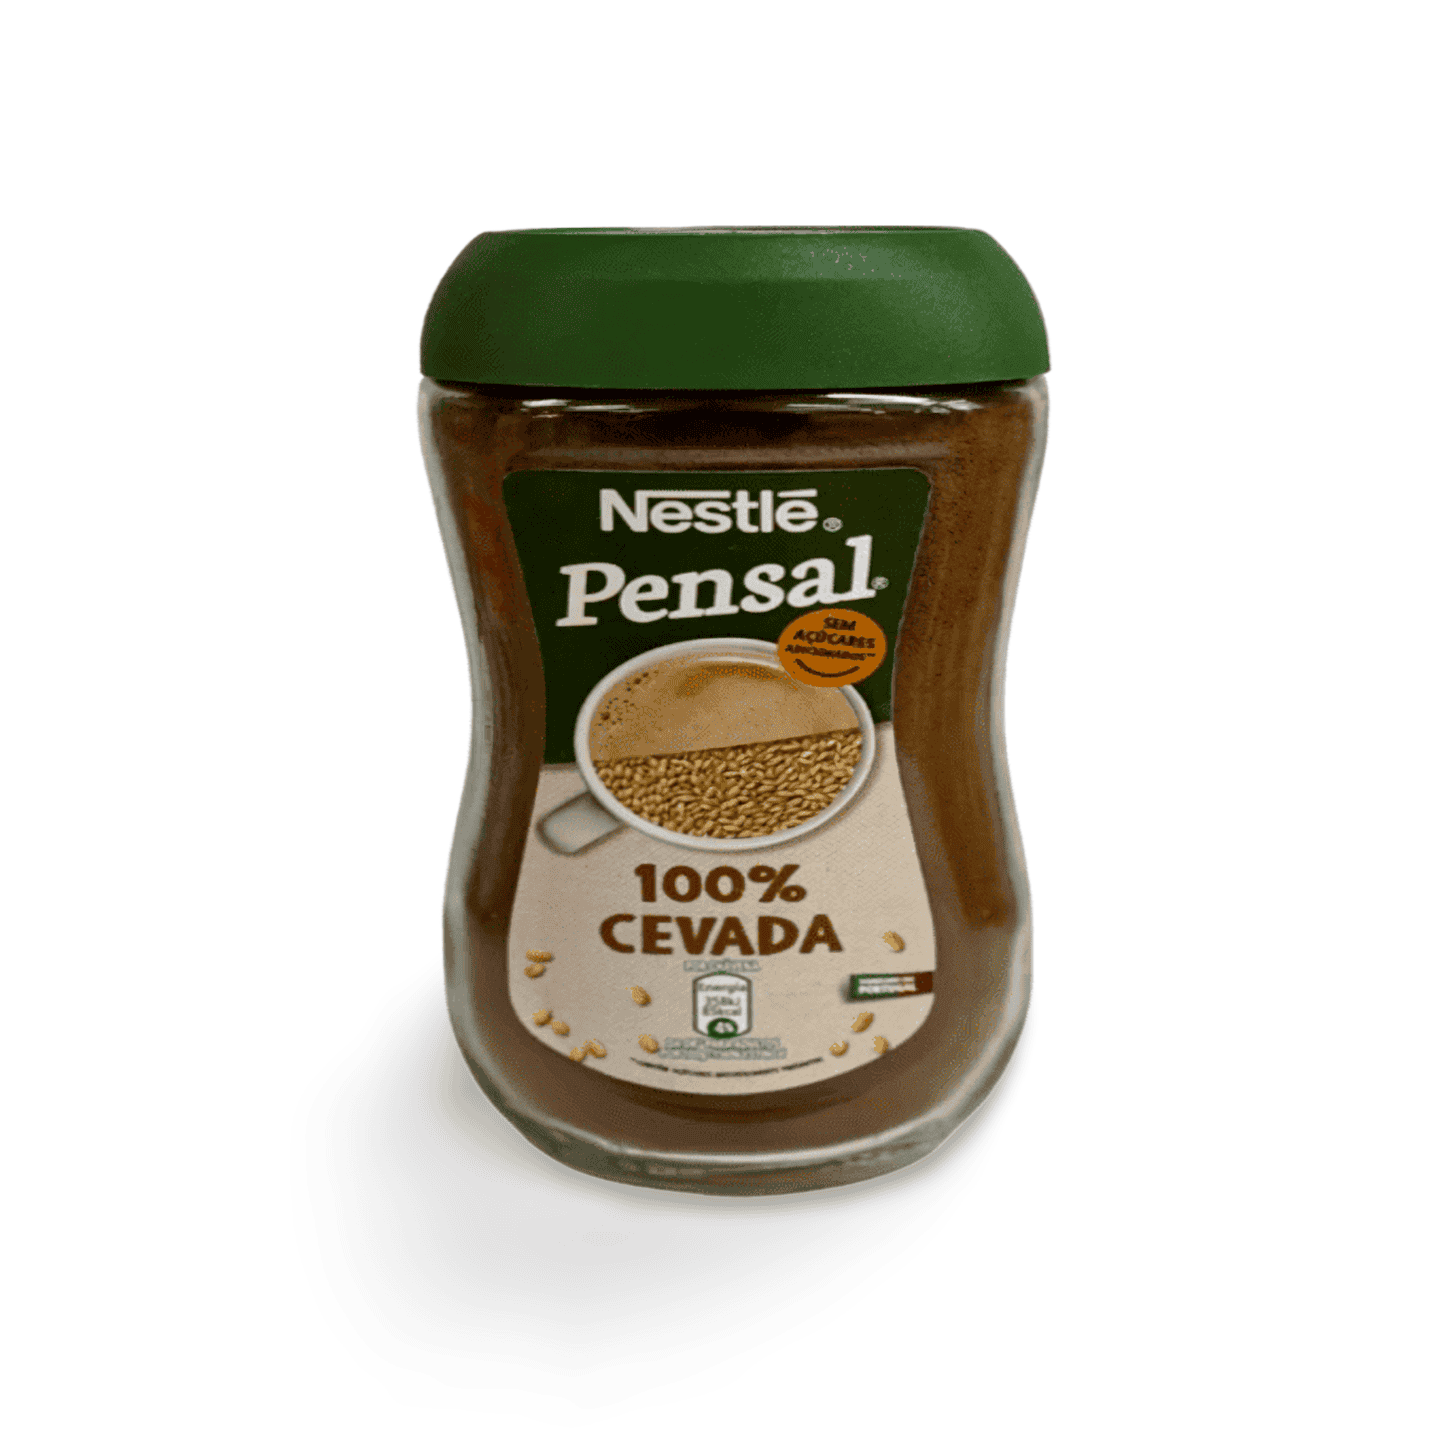 Nestle Pensal Cevada Coffee